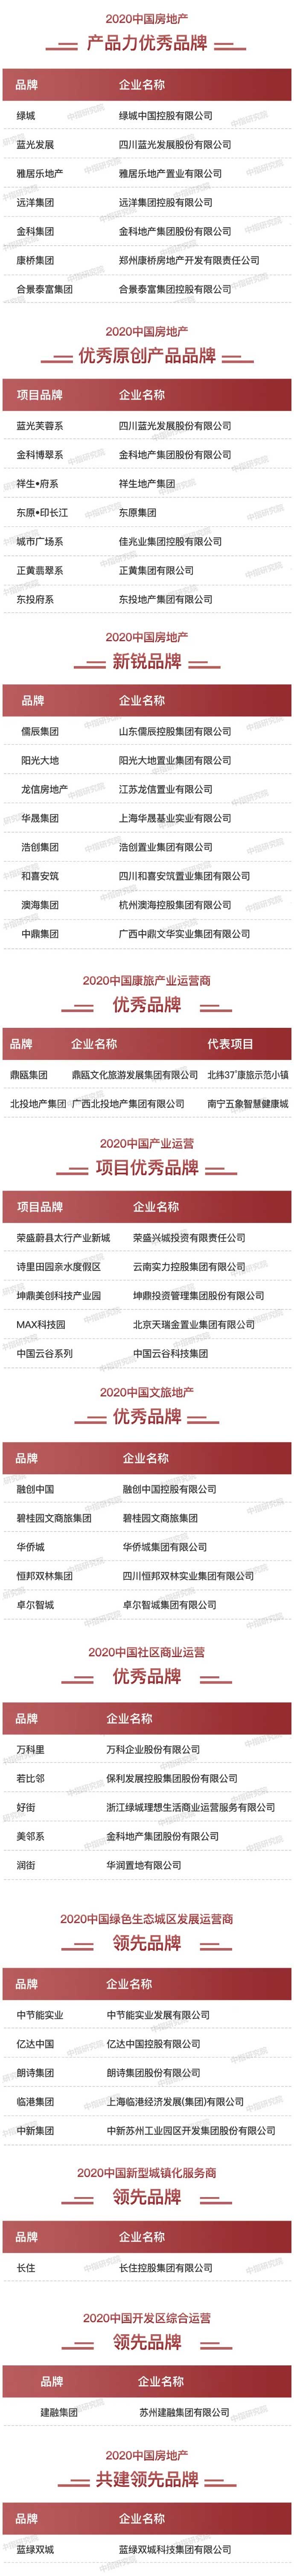 2020中国房地产品牌价值10排行榜